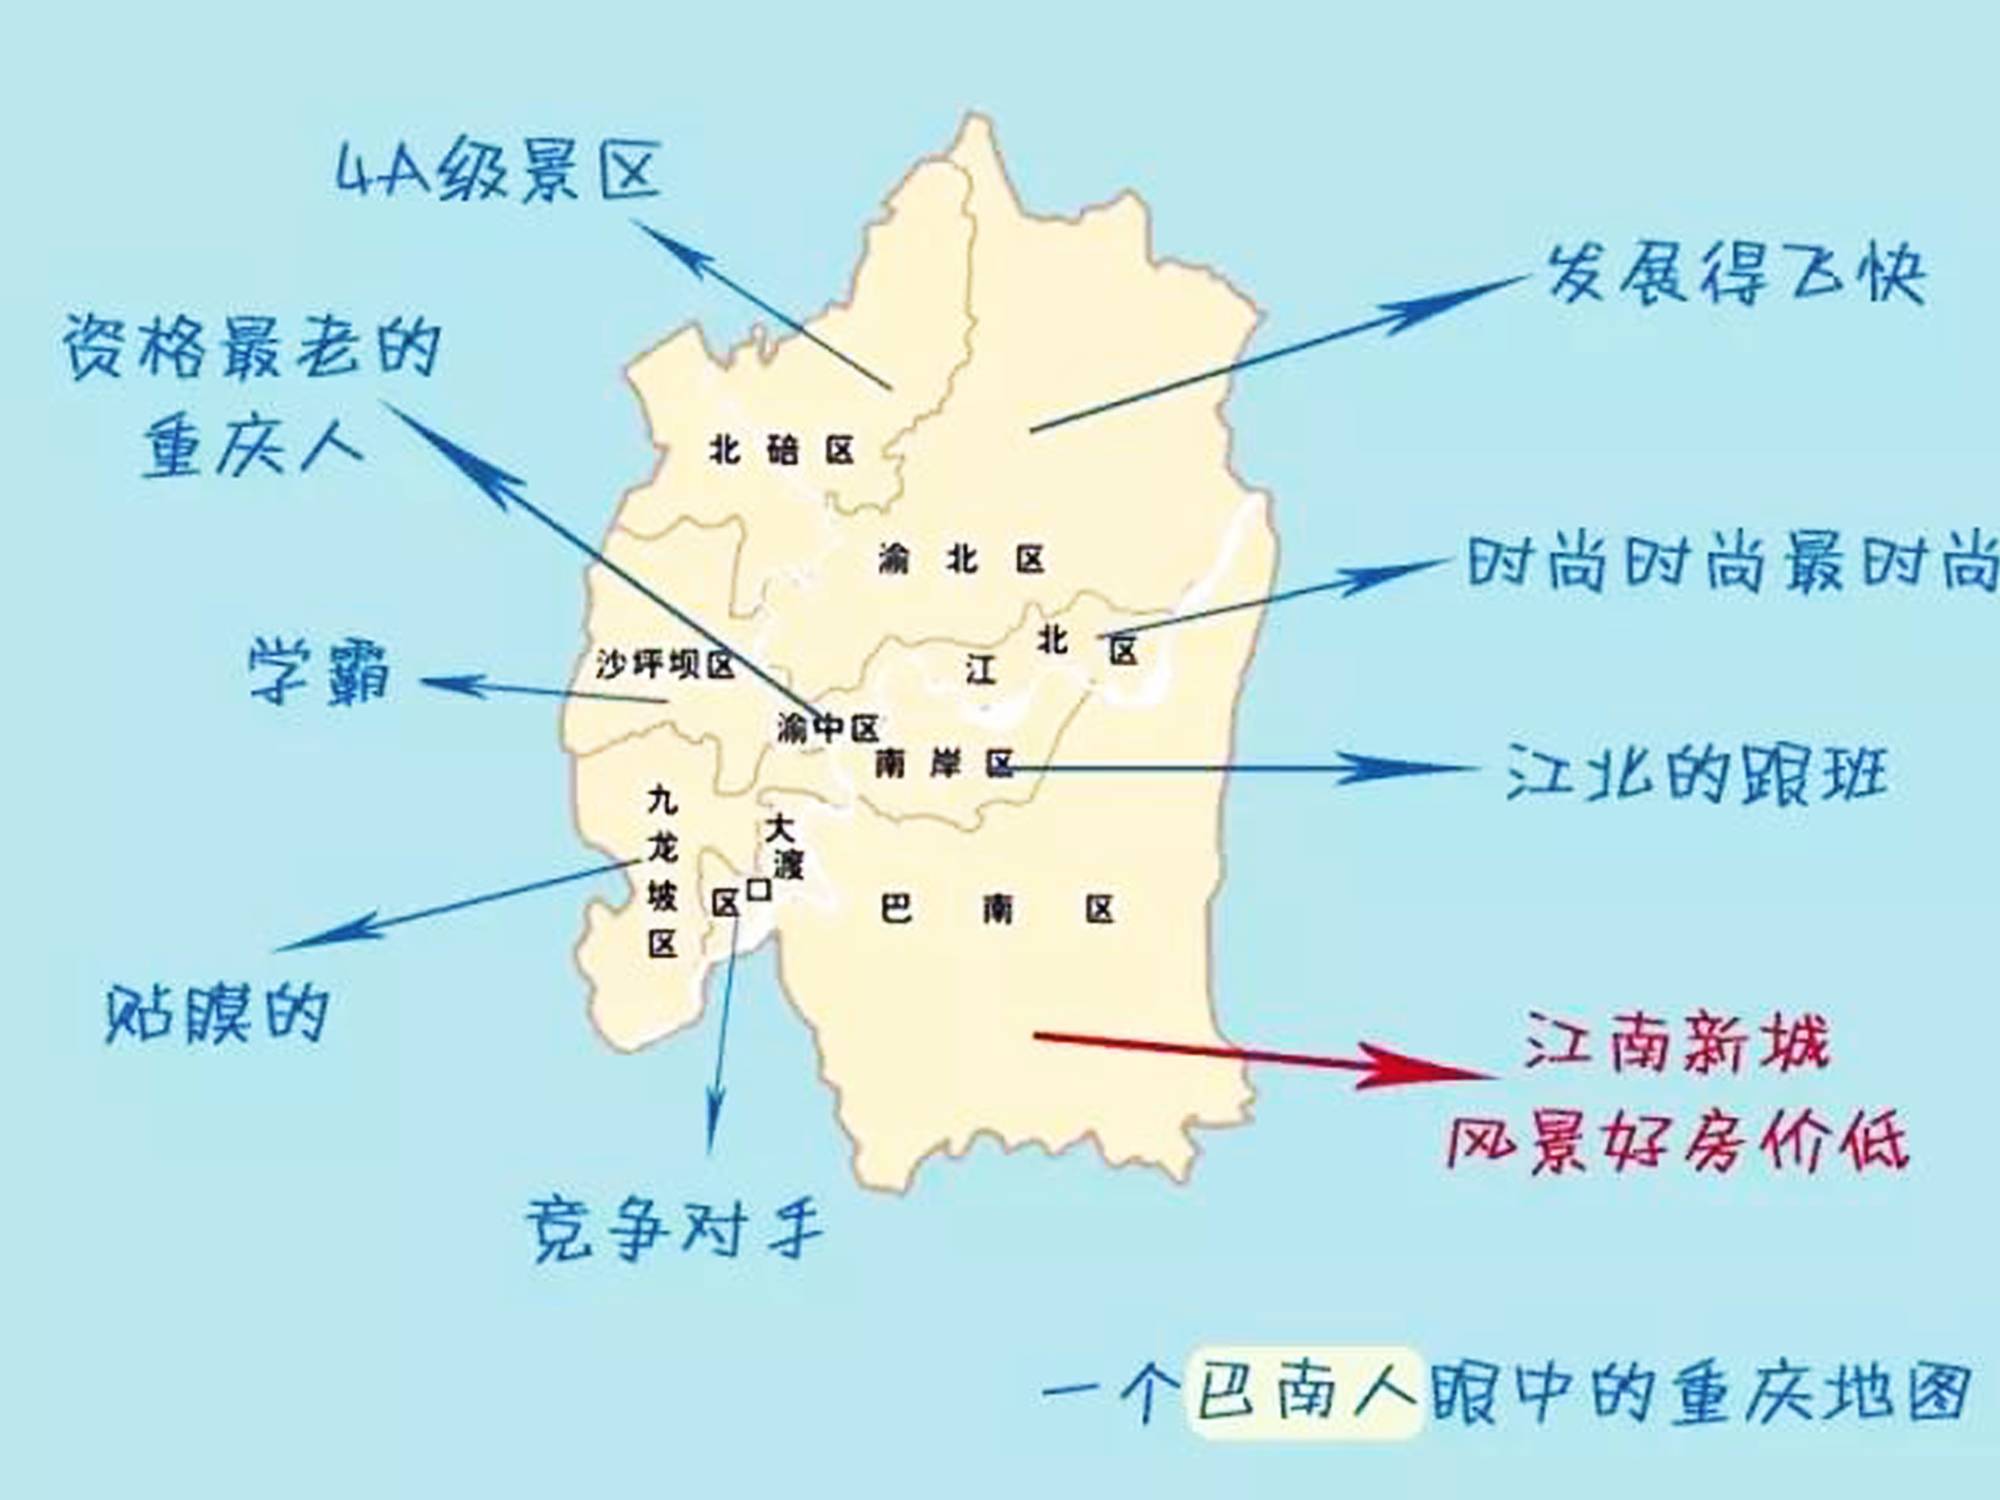 【封面】重庆各区人眼中的北碚,原来是勒个样儿